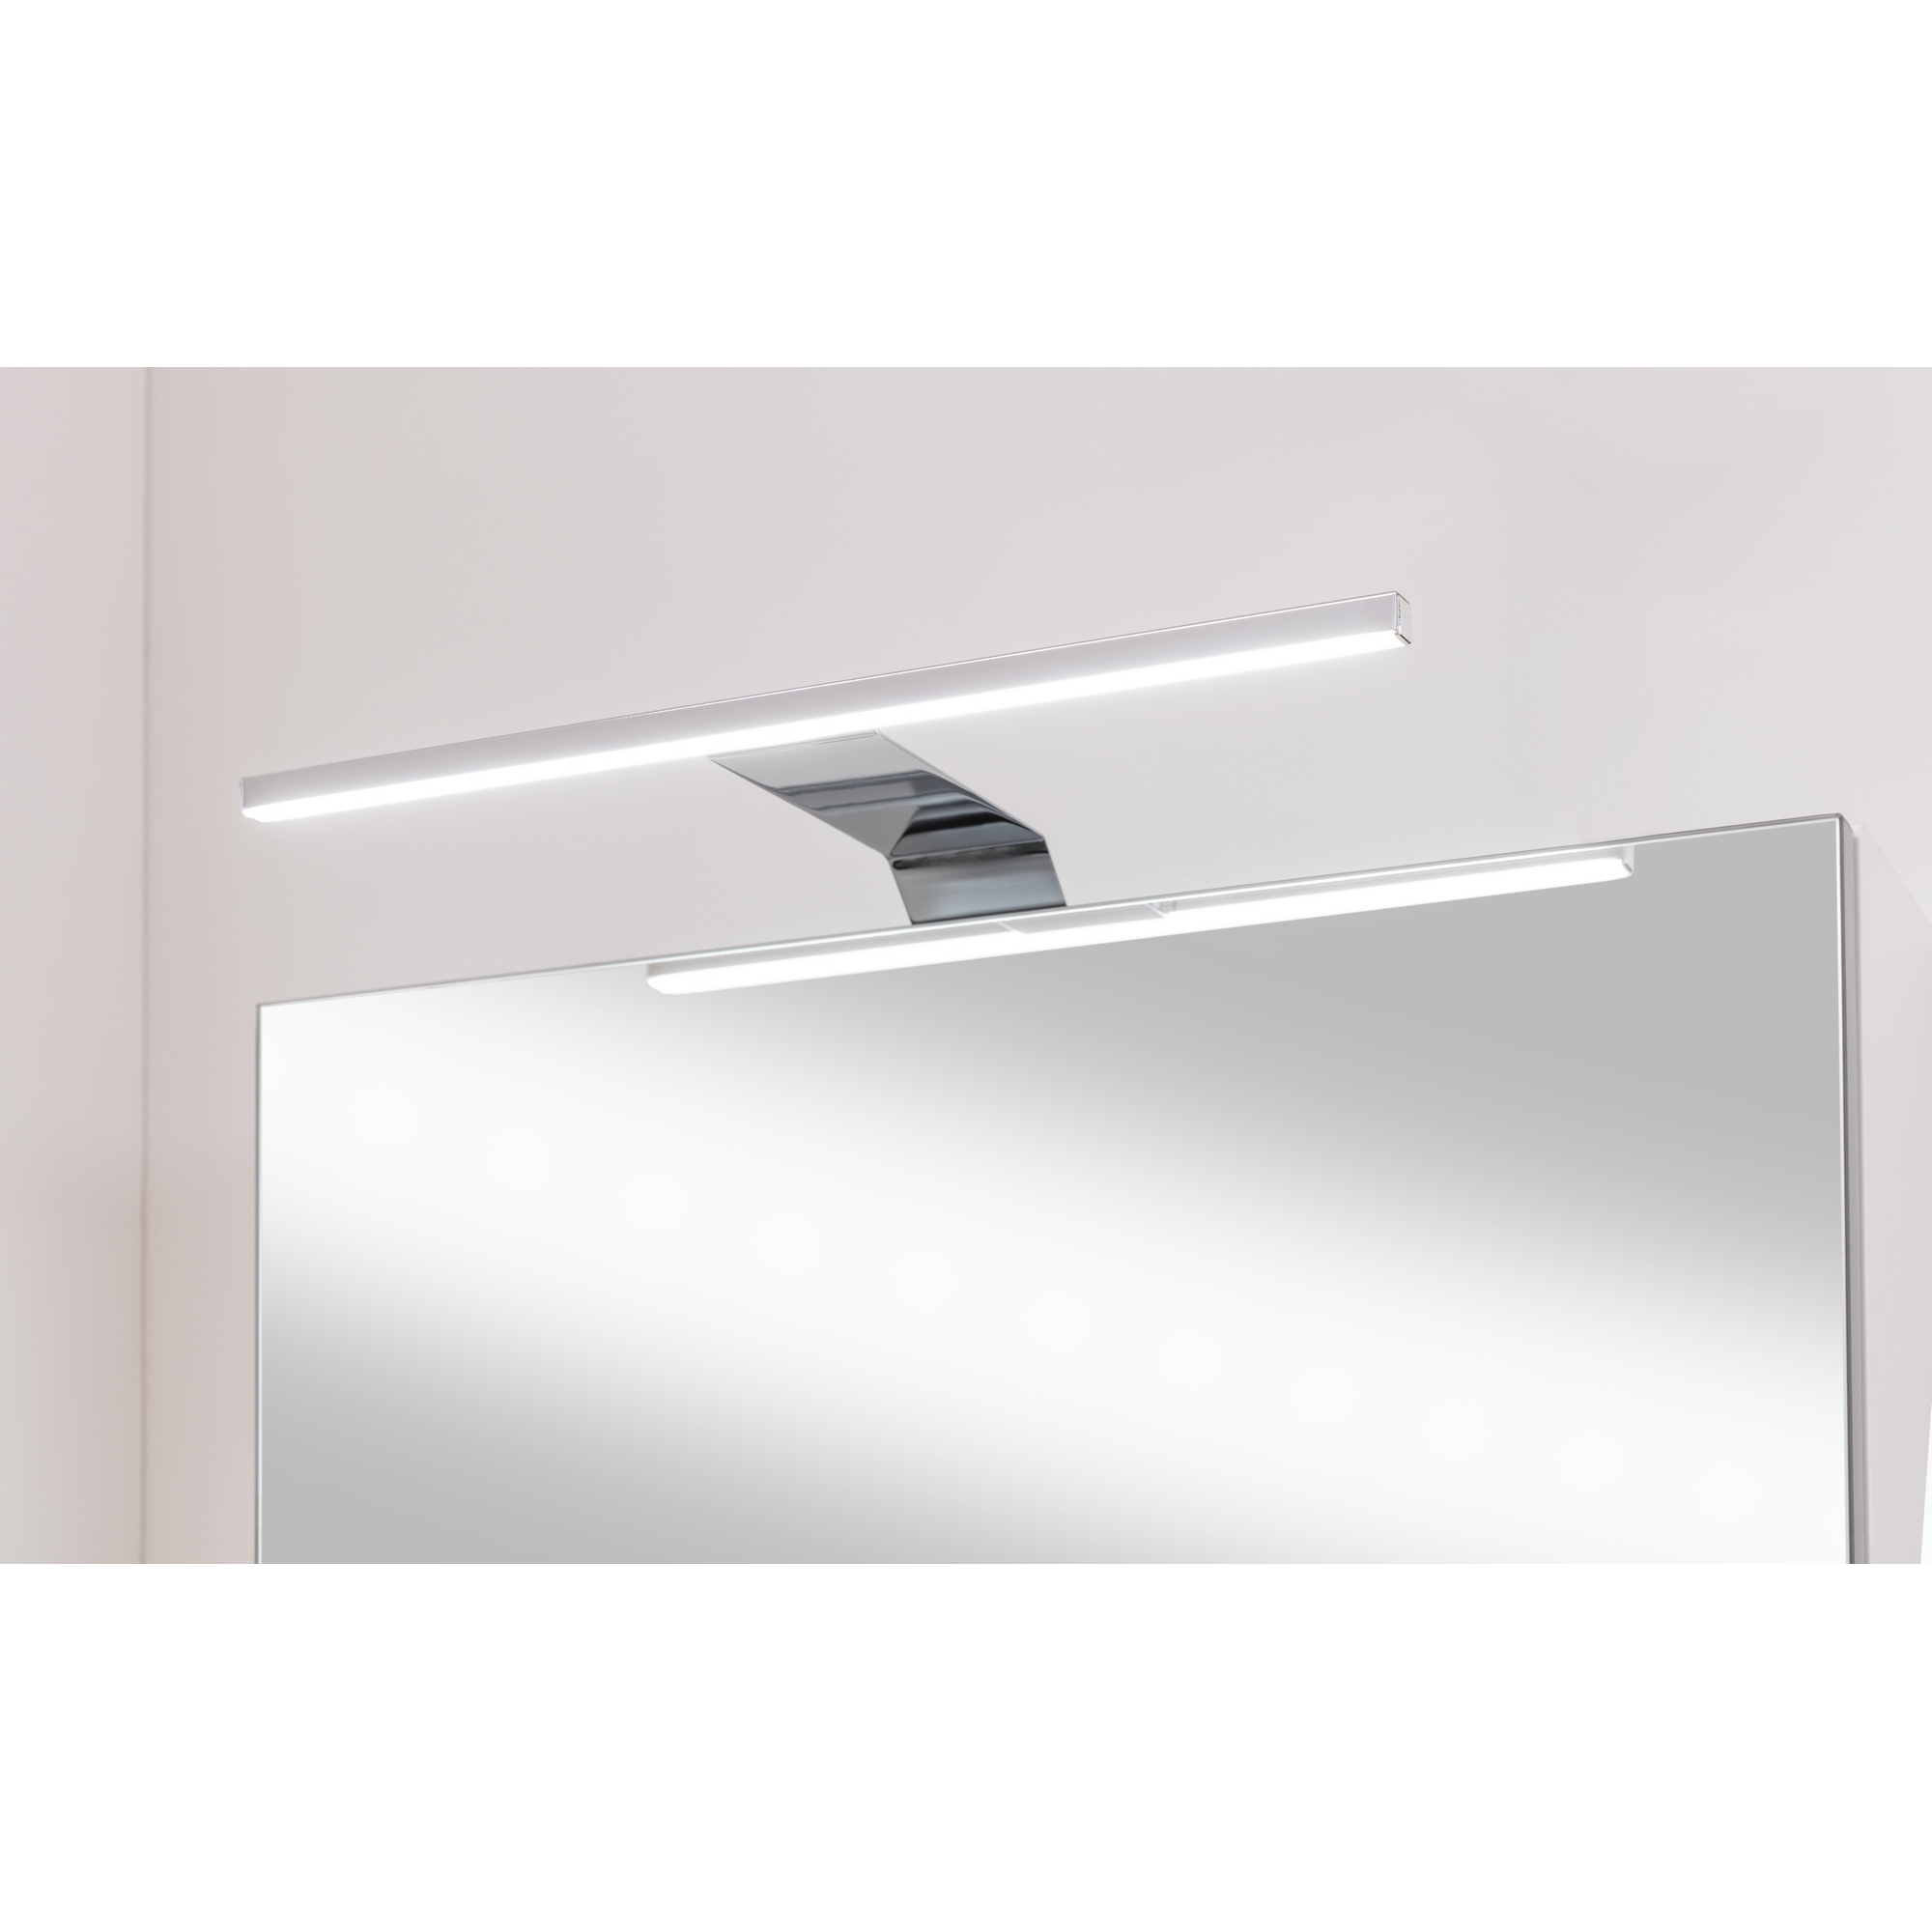 LED-Spiegelschrank 'SBC' weiß matt 50 x 68 x 15,3 cm rechts + product picture